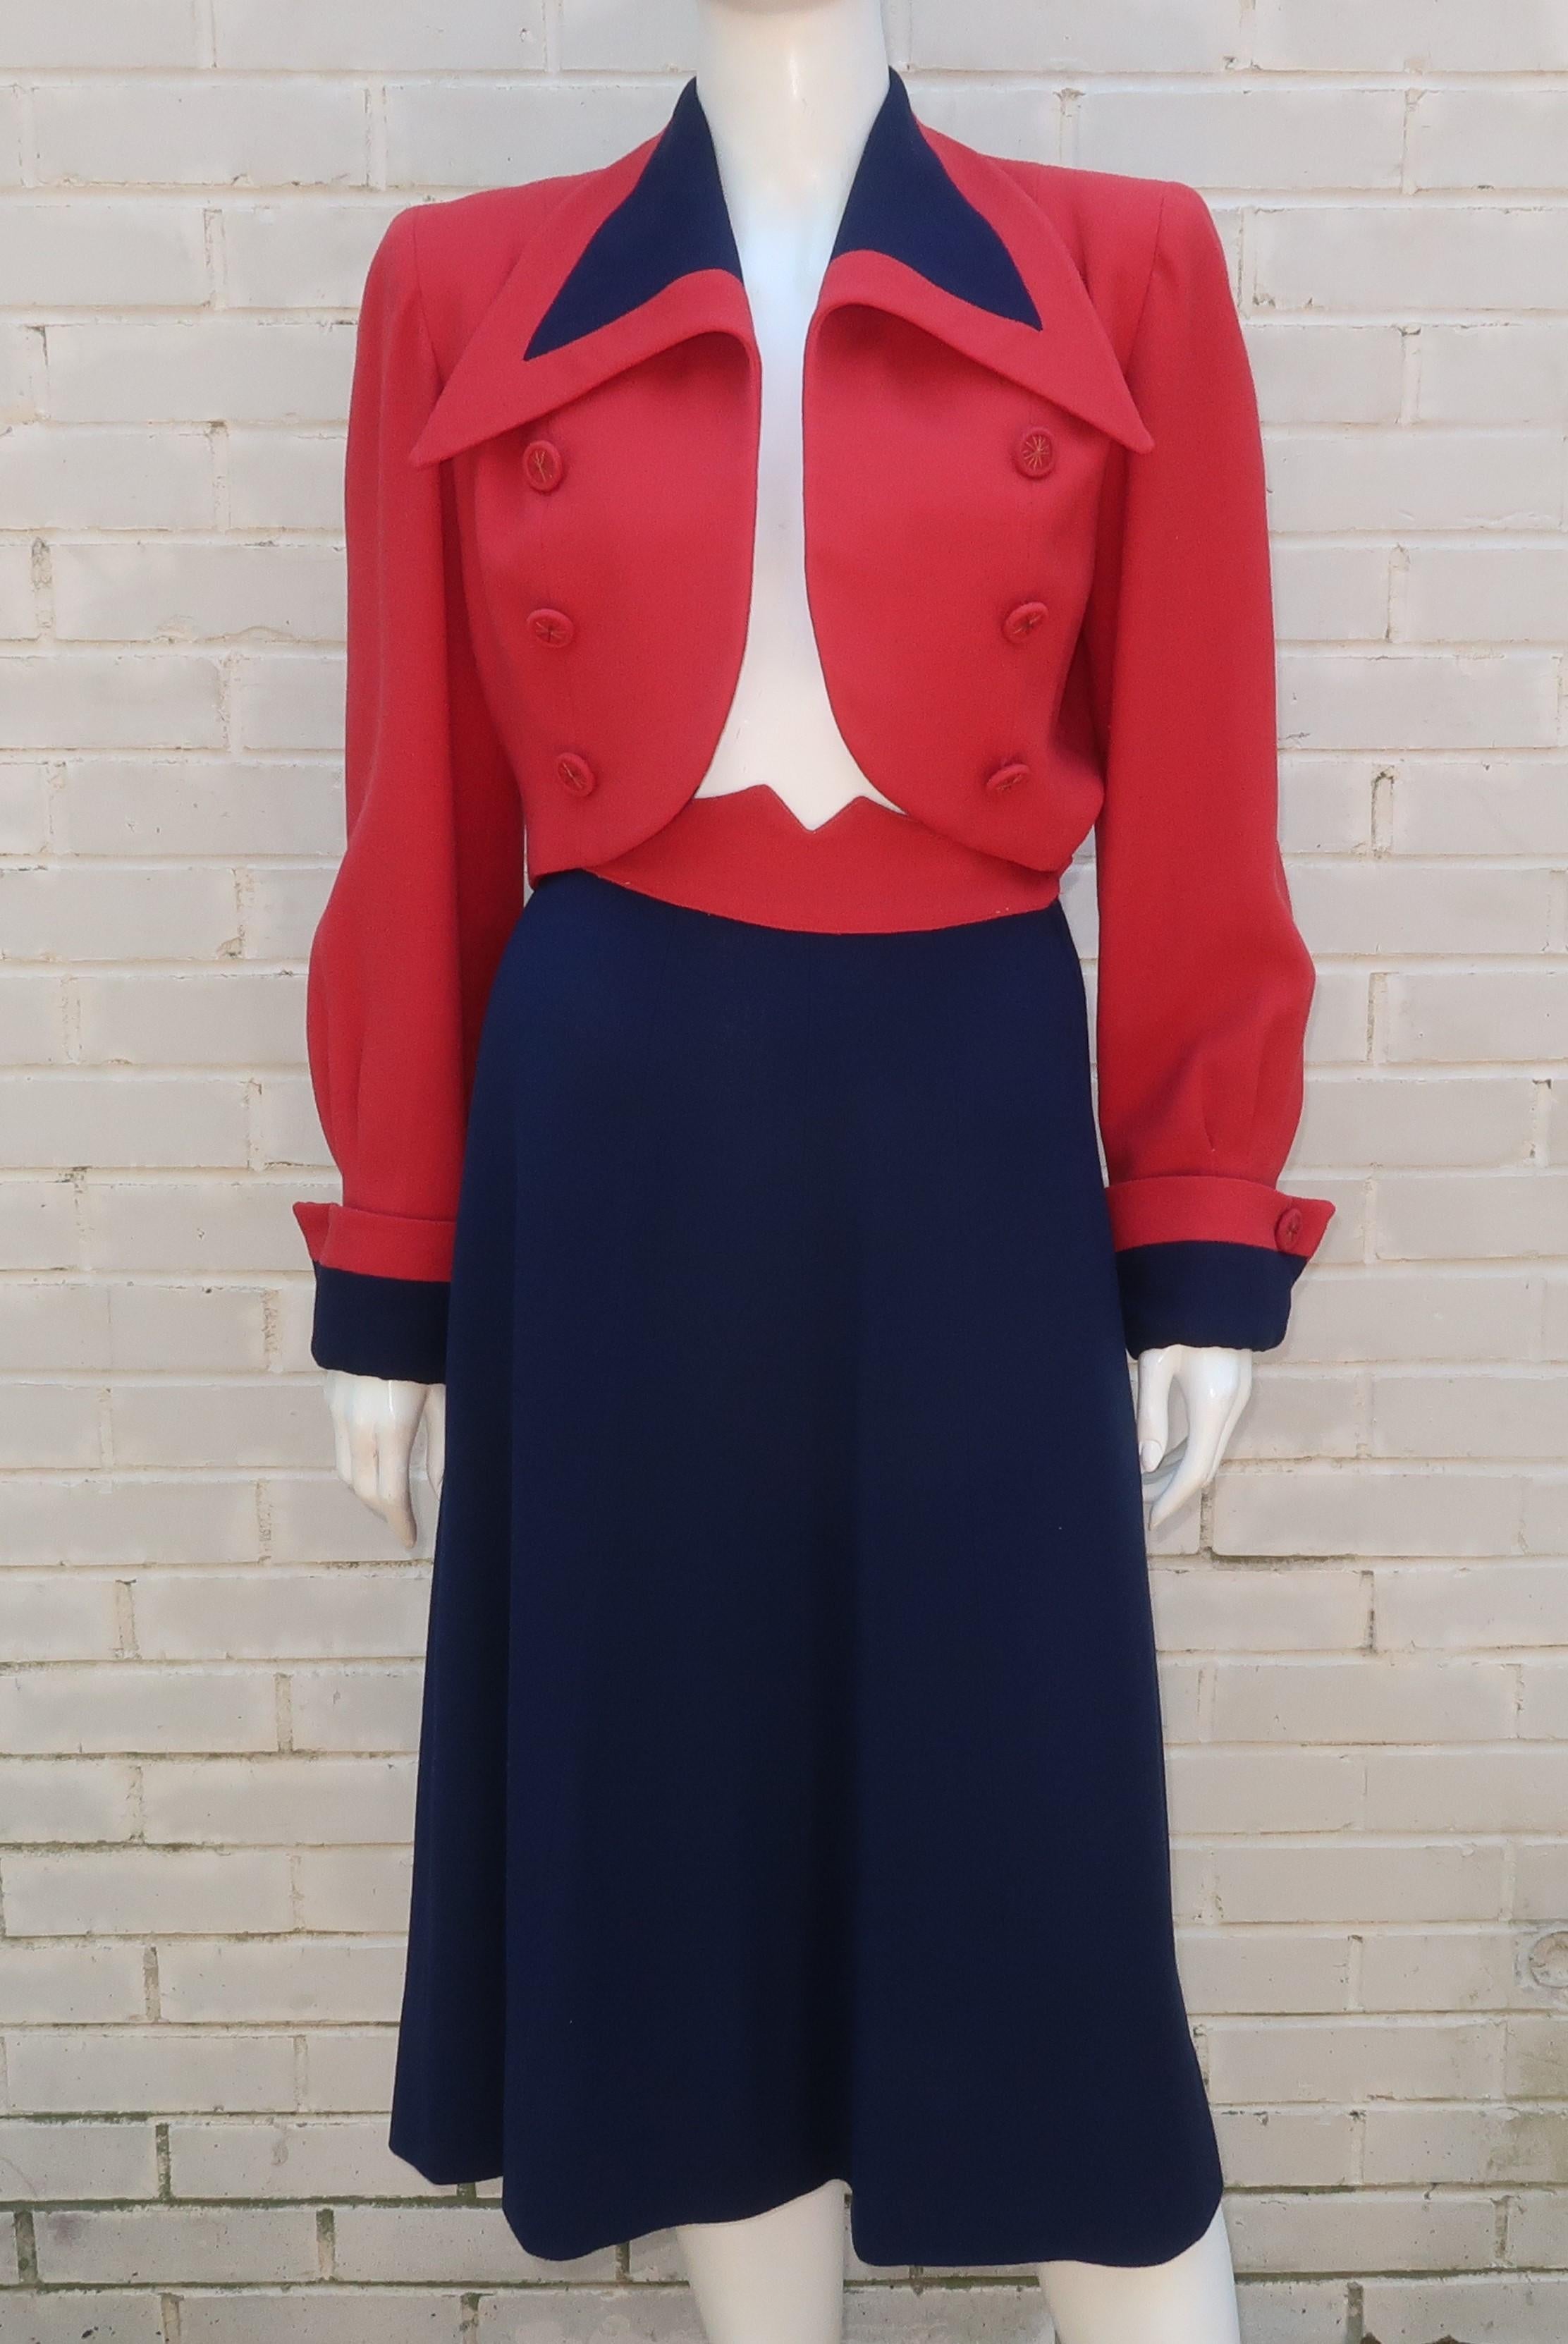 patriotischer Anzug im Stil der 1940er Jahre aus rotem und blauem Krepp mit abgeschnittener Jacke.  Die Jacke ist eine stilisierte Version des Military-Looks mit spitzem, breitem Kragen, überschnittenen Schultern, umgeschlagenen Manschetten und